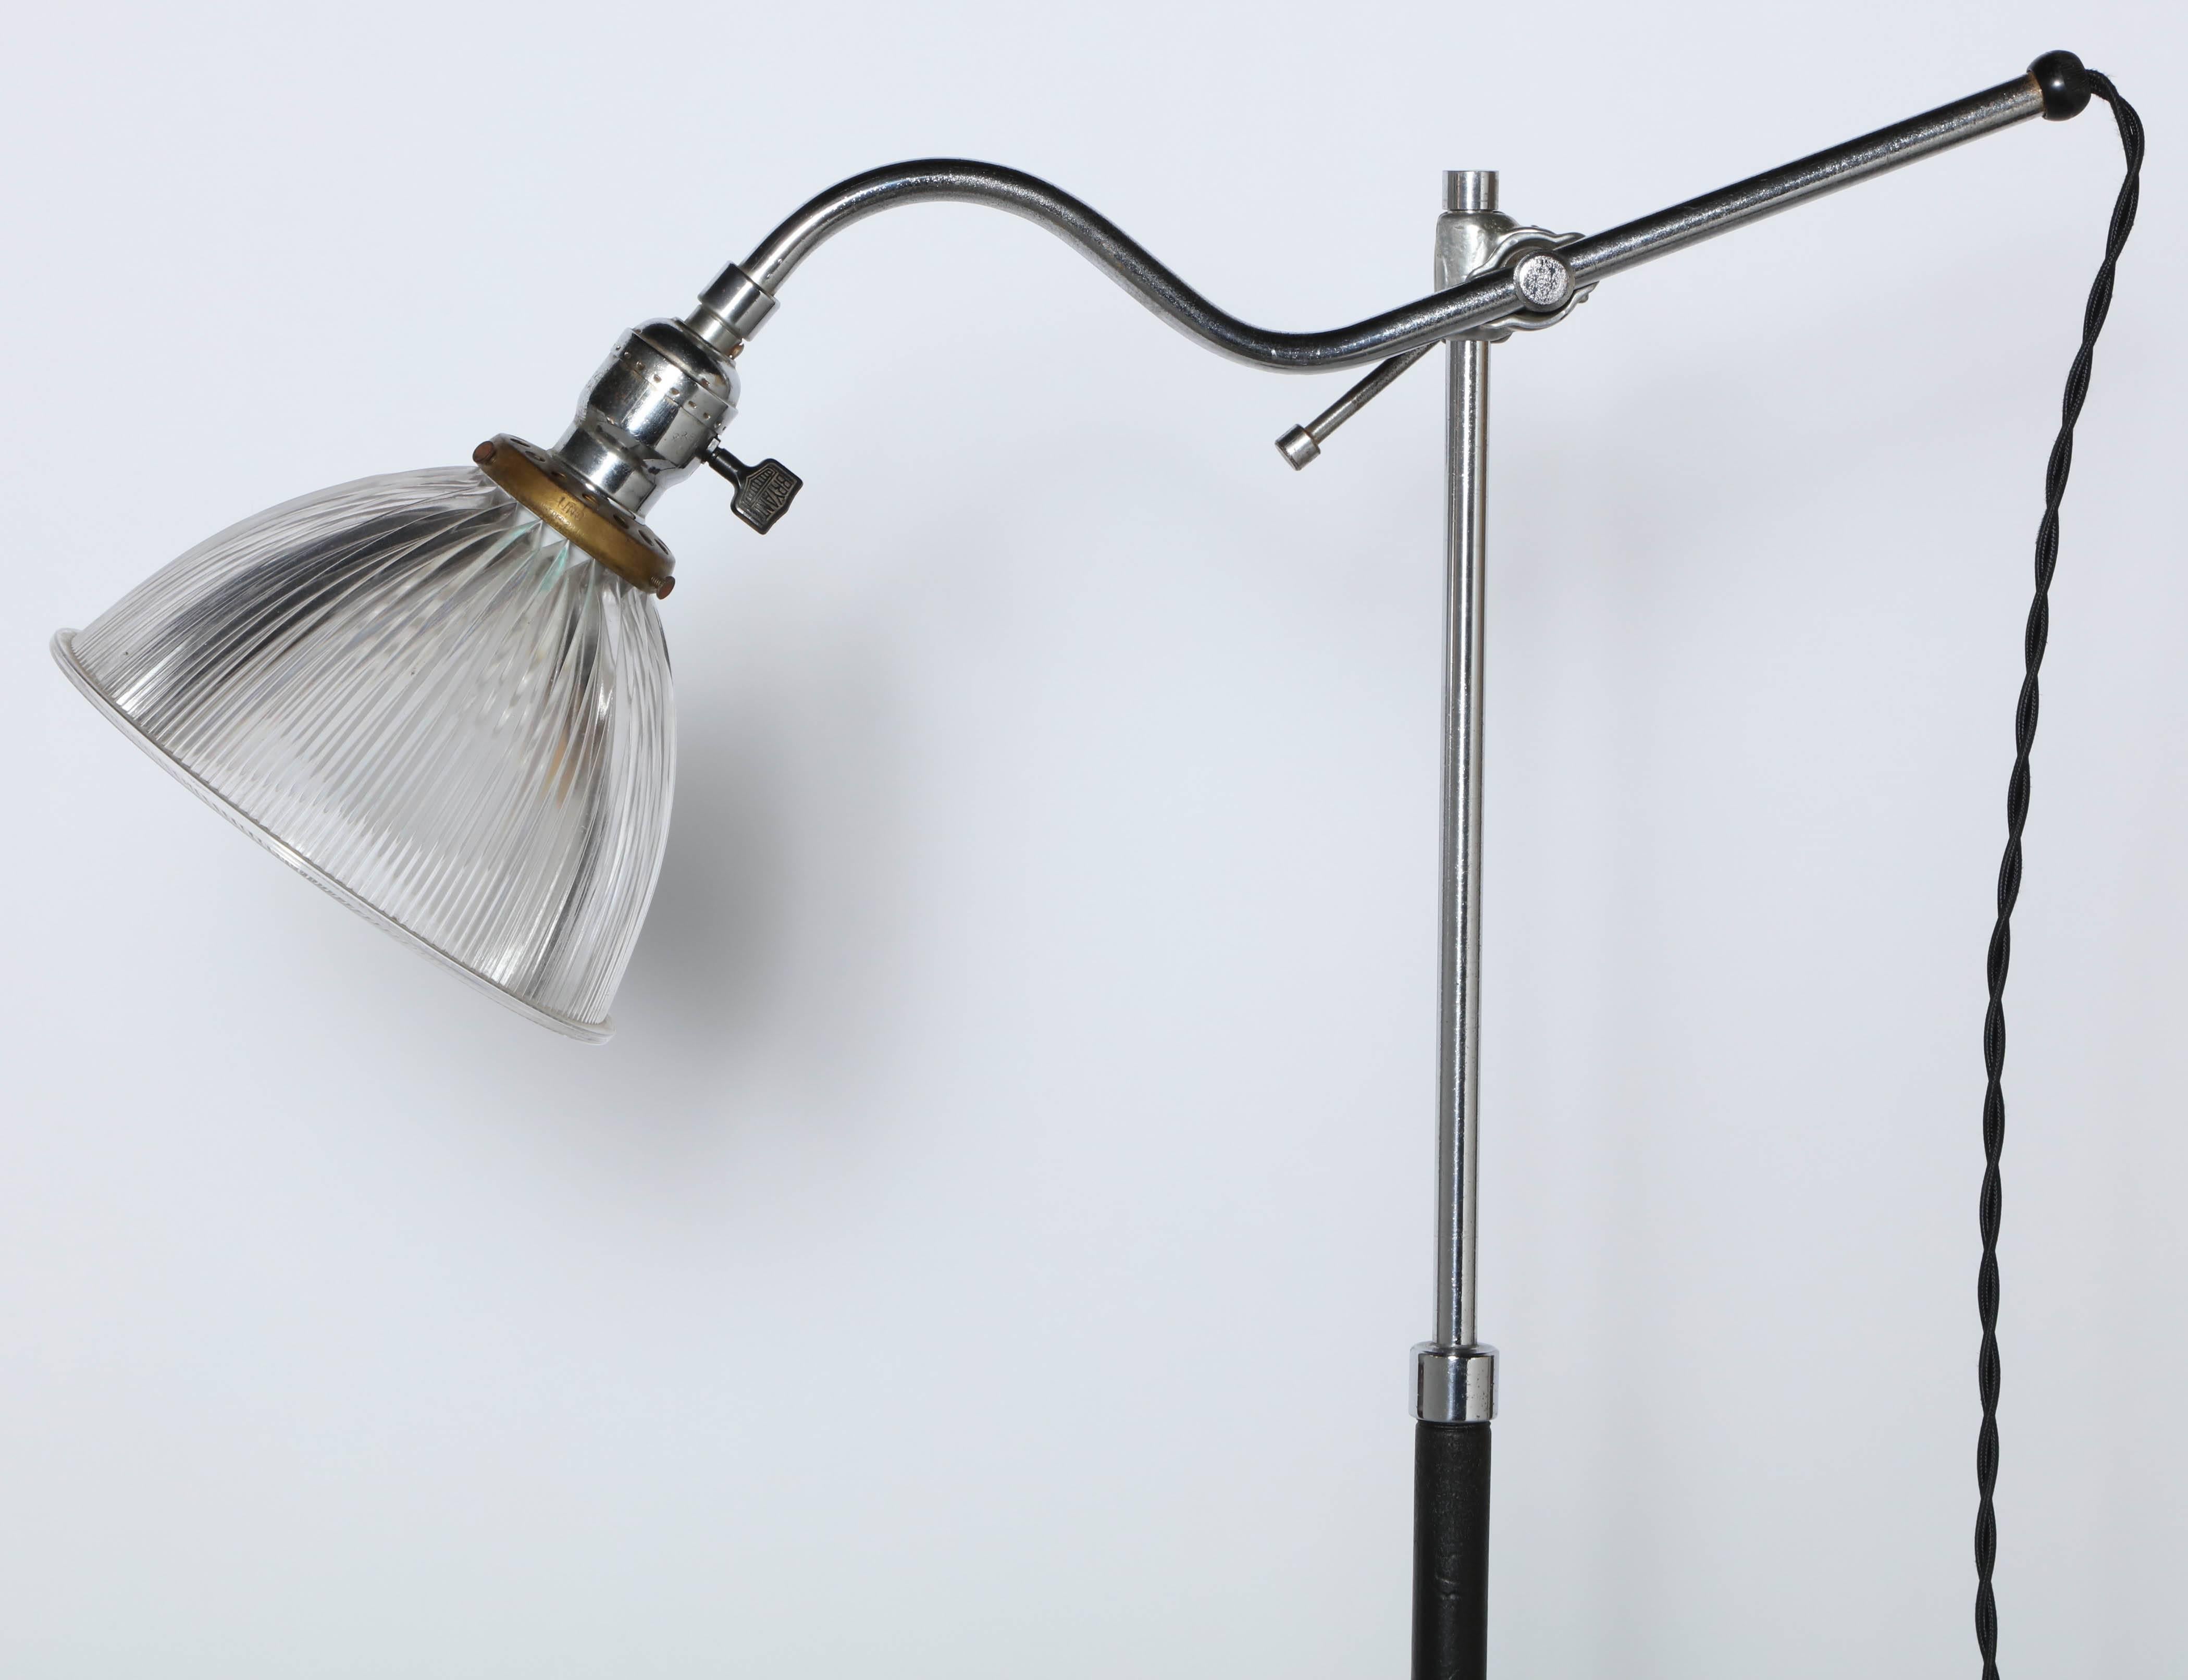 Stehlampe aus Stahl, Chromblech, Gusseisen und schwarzer Säule aus dem frühen 20. Jahrhundert mit klarem Holophane-Glasschirm. Mit einem Gelenkarm aus verchromtem Stahl, einer verstellbaren Säule aus verchromtem Stahl und schwarz emailliertem